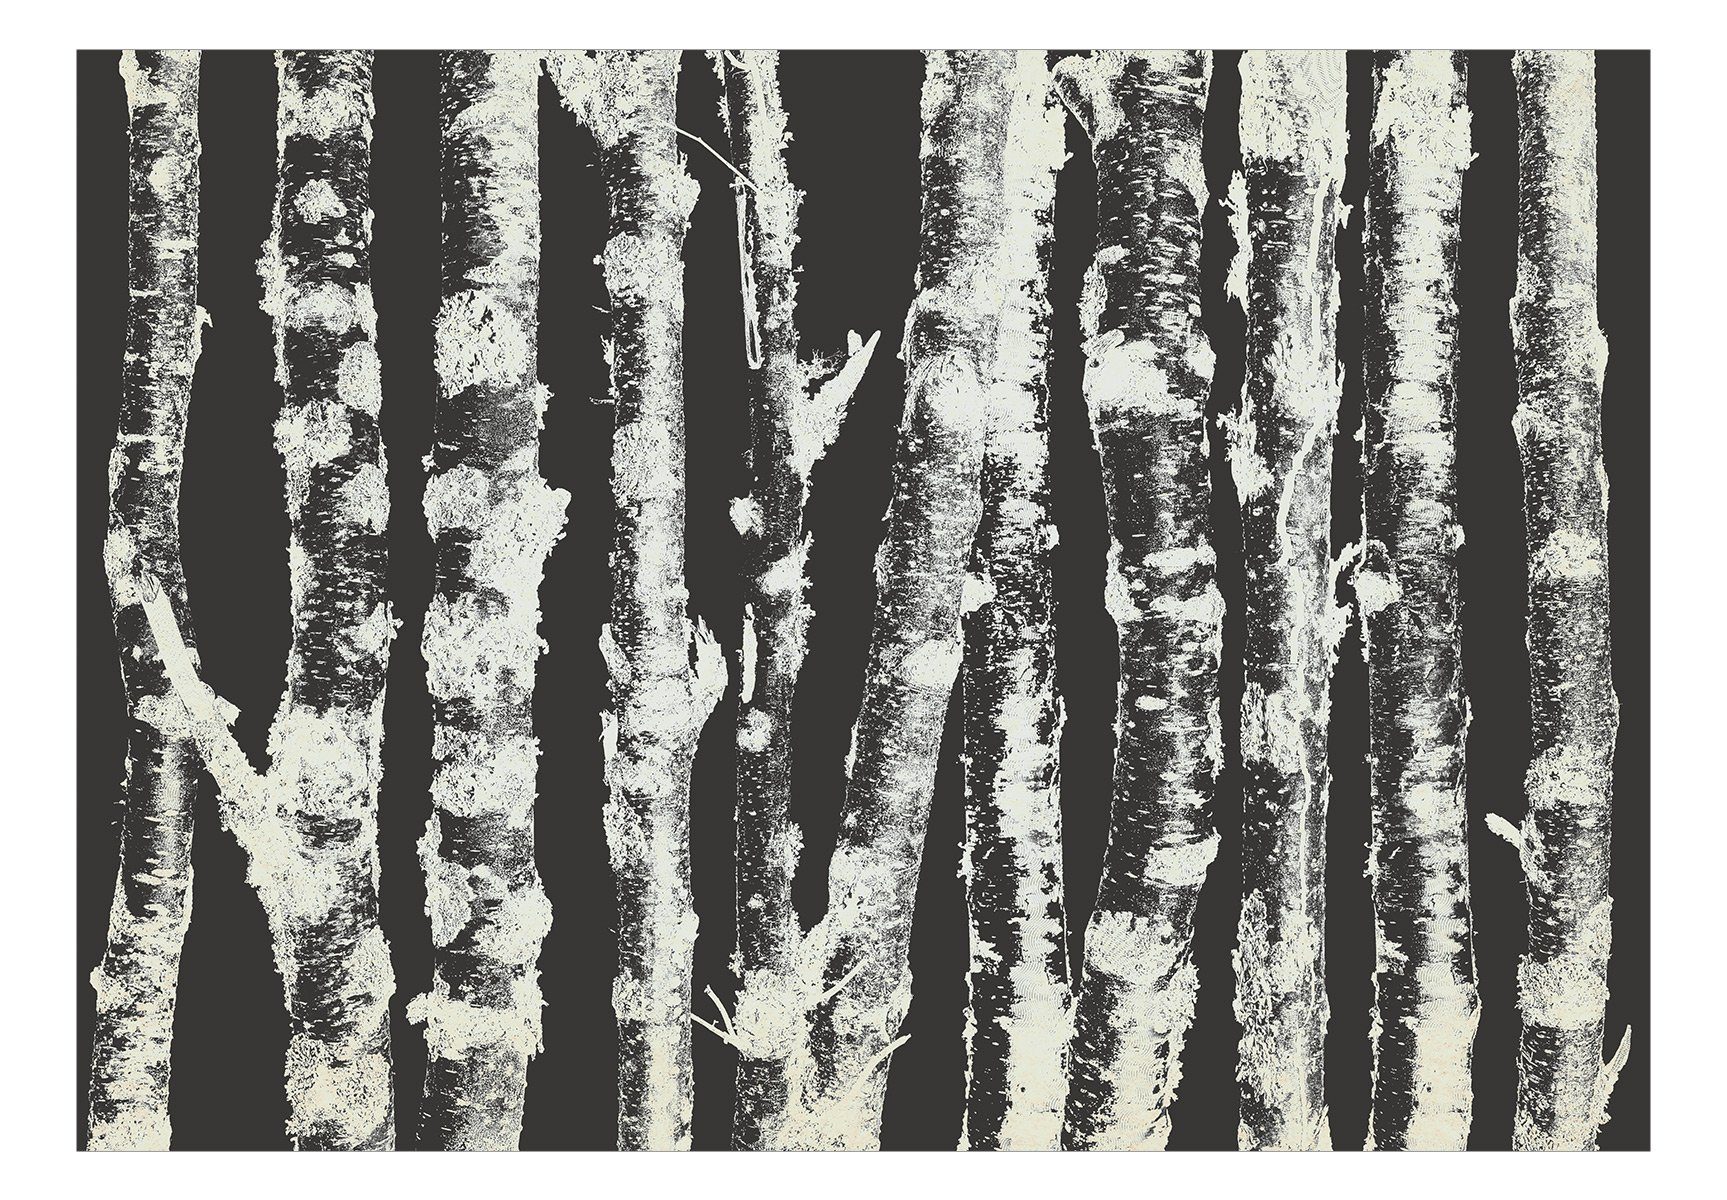 Birches lichtbeständige halb-matt, Second - 1x0.7 Variant Design KUNSTLOFT m, Tapete Vliestapete Stately